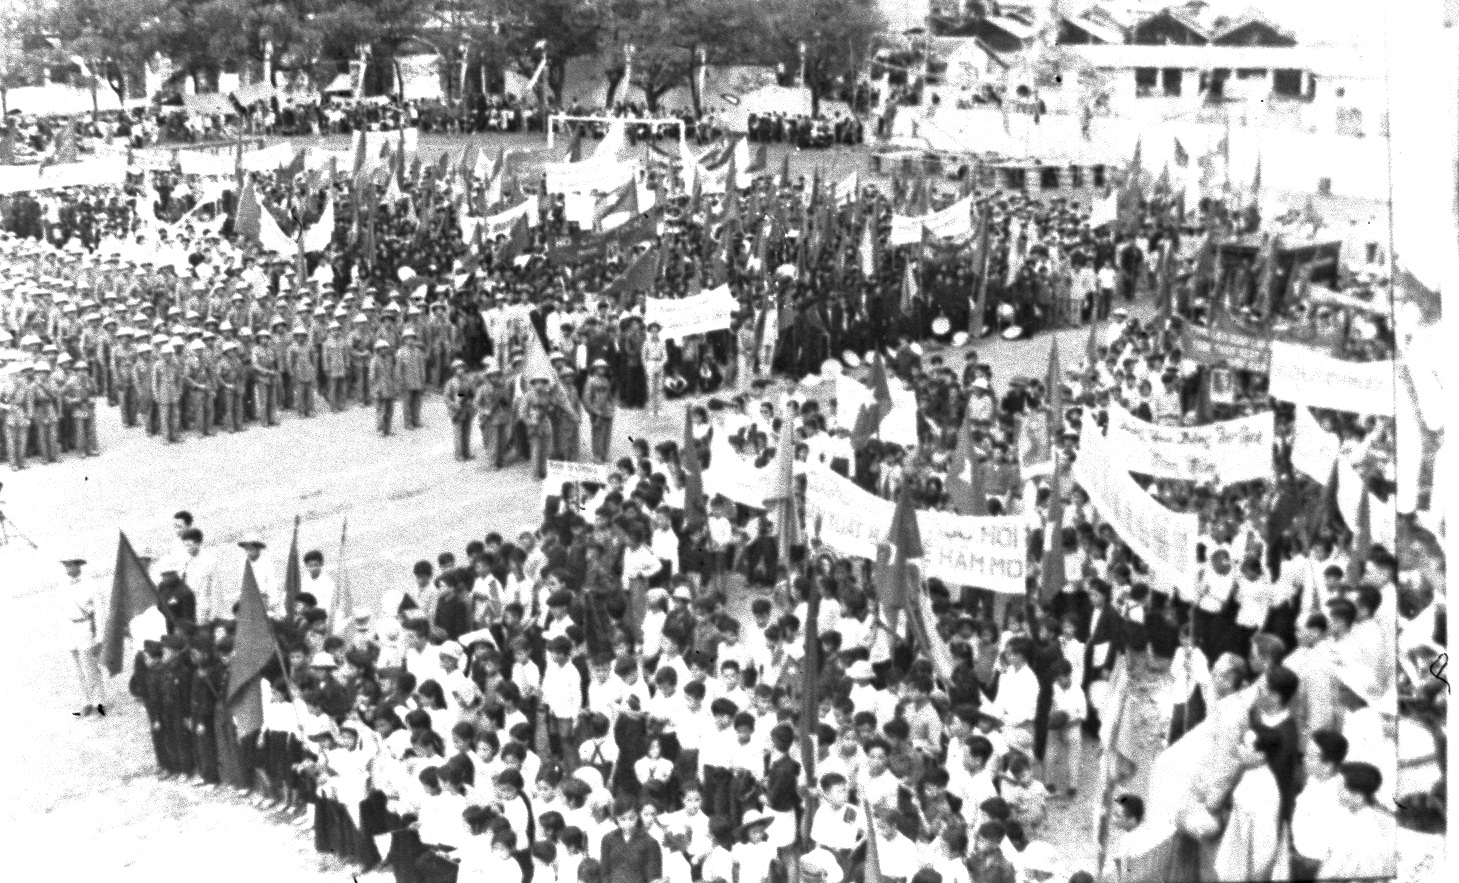 Quang cảnh cuộc mít tinh mừng Vùng mỏ được giải phóng tổ chức tại Hòn Gai, ngày 25/4/1955. Ảnh tư liệu của Bảo tàng Quảng Ninh